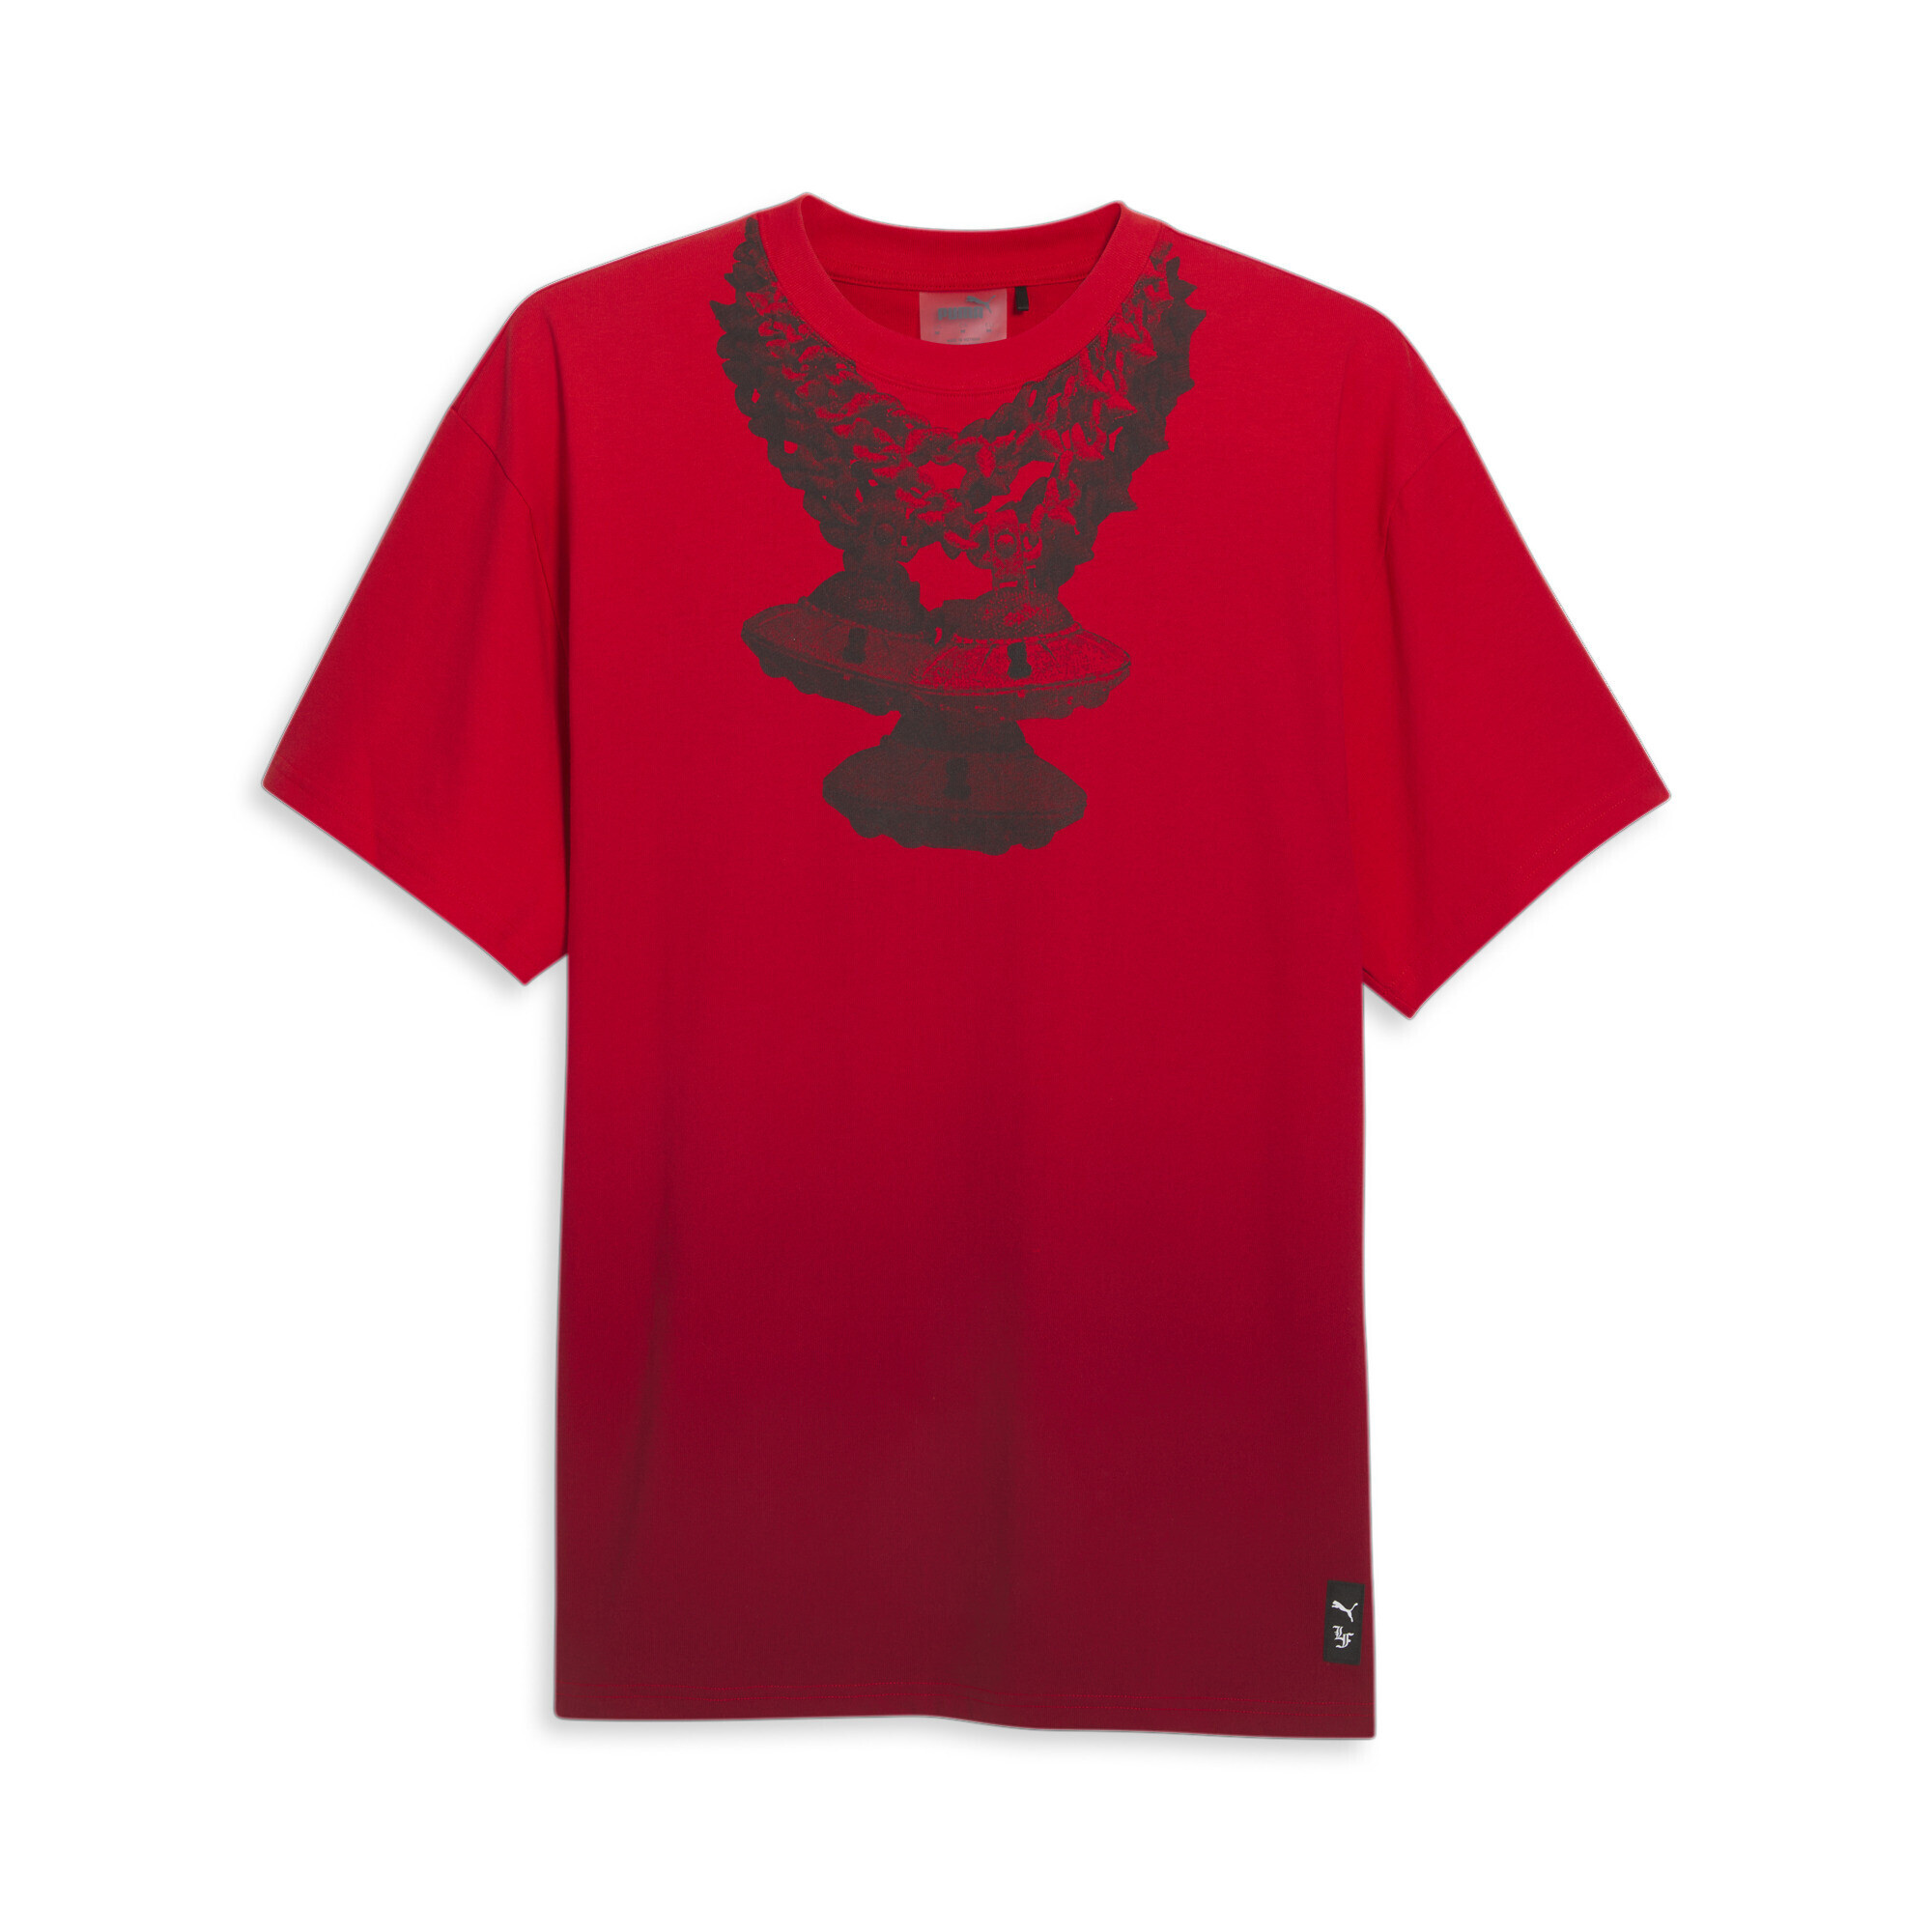 Men's PUMA X LAFRANCÃ T-Shirt In Red, Size Small